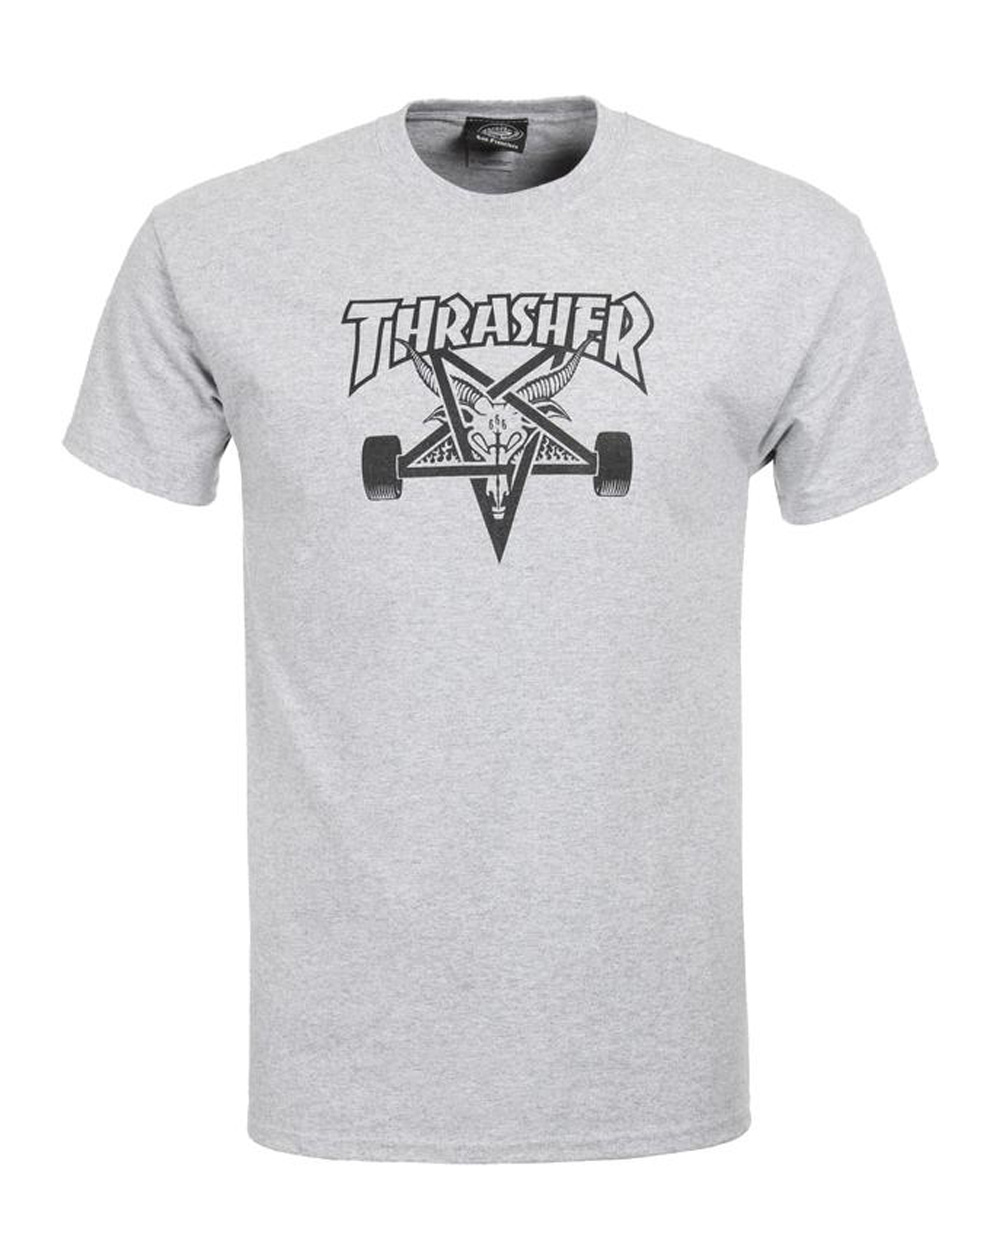 Thrasher Skate Goat Camiseta para Homem Grey